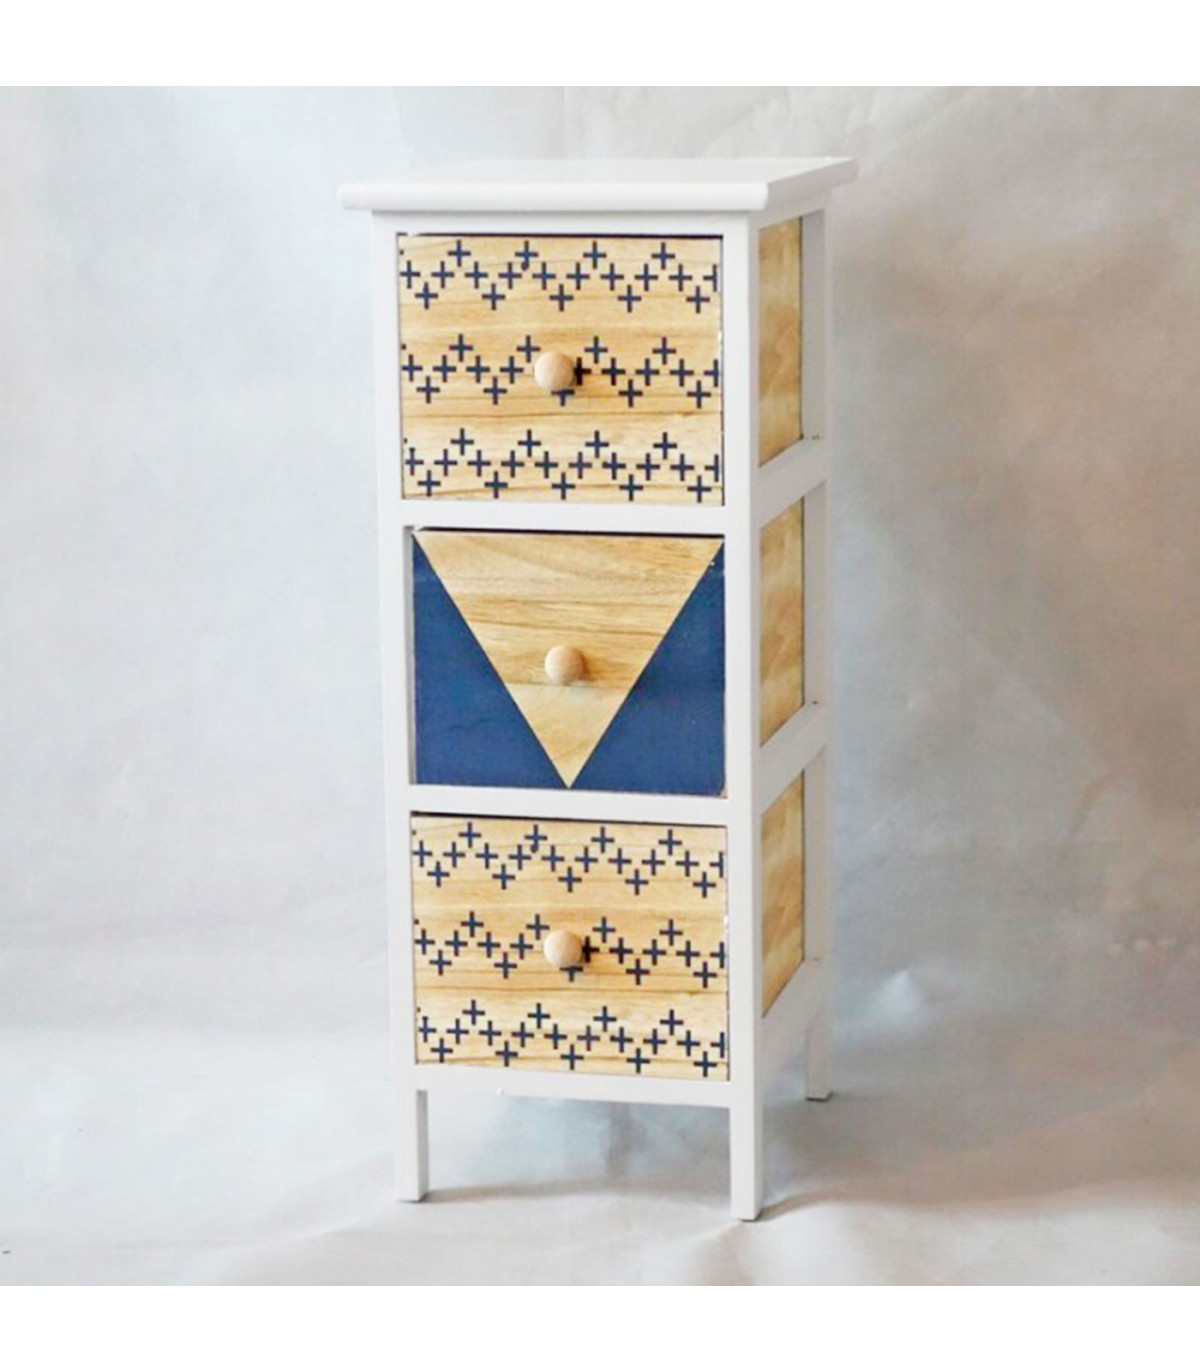 sal Exclusión eficaz Cajonera blanca de madera, 3 cajones, 62,5 x 26 x 32 cm, diseño con cruces  azules, torre de ordenación, mueble auxiliar almacena